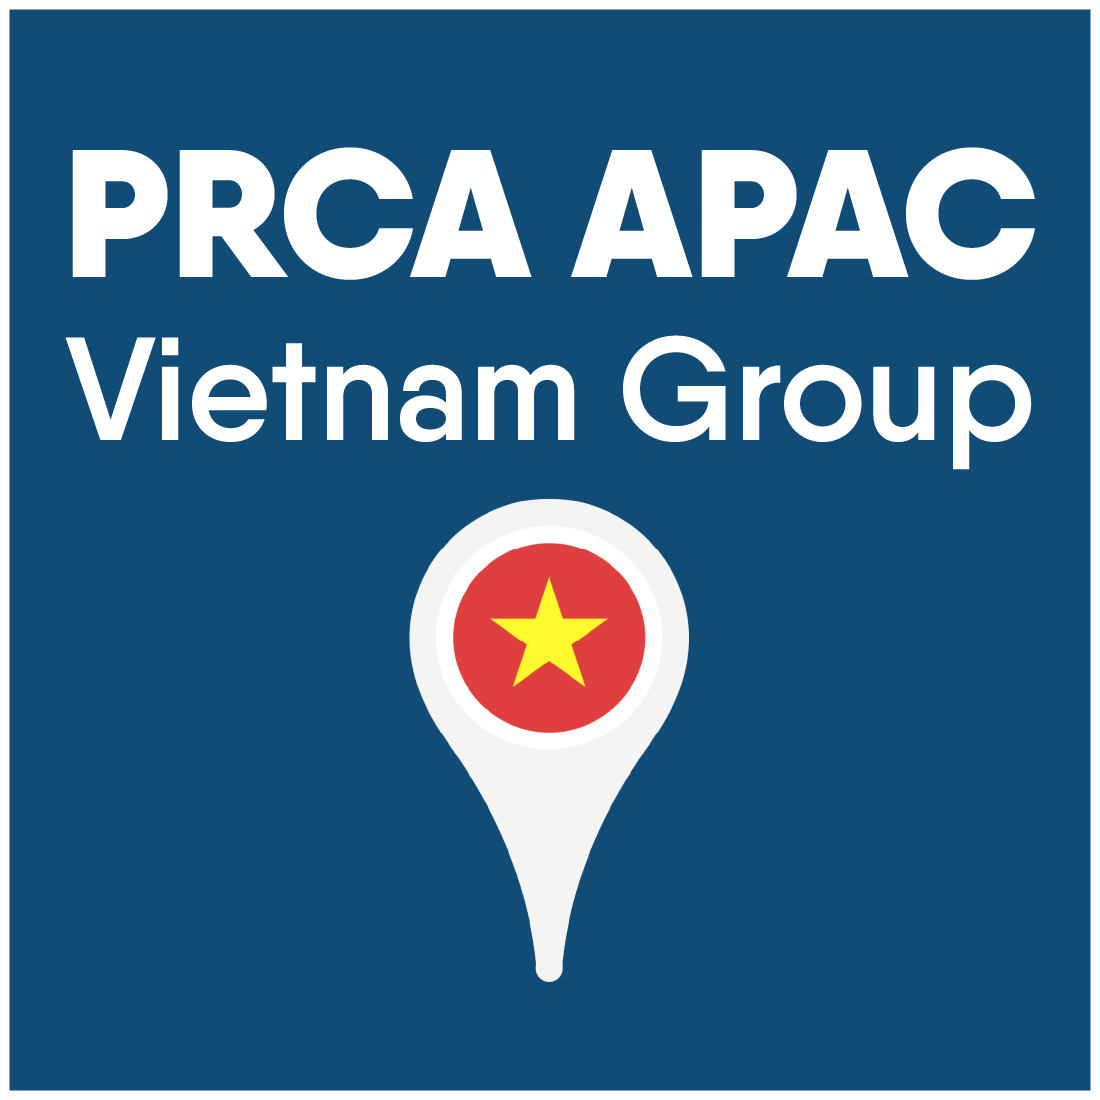 Vietnam Group